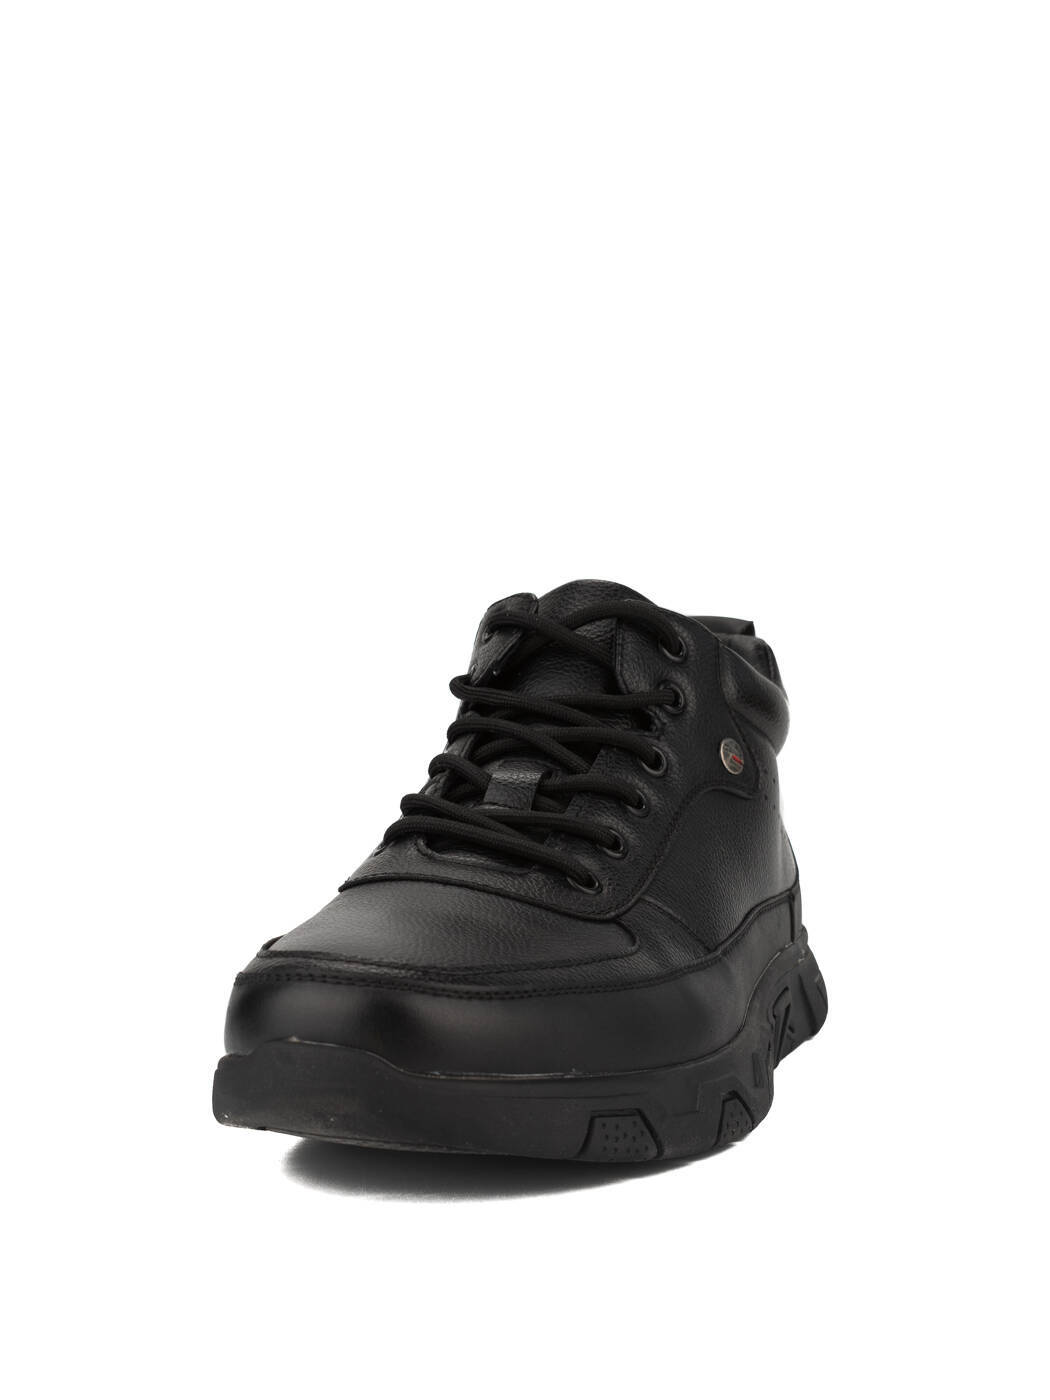 Ботинки мужские черные экокожа платформа демисезон от производителя 1M вид 0